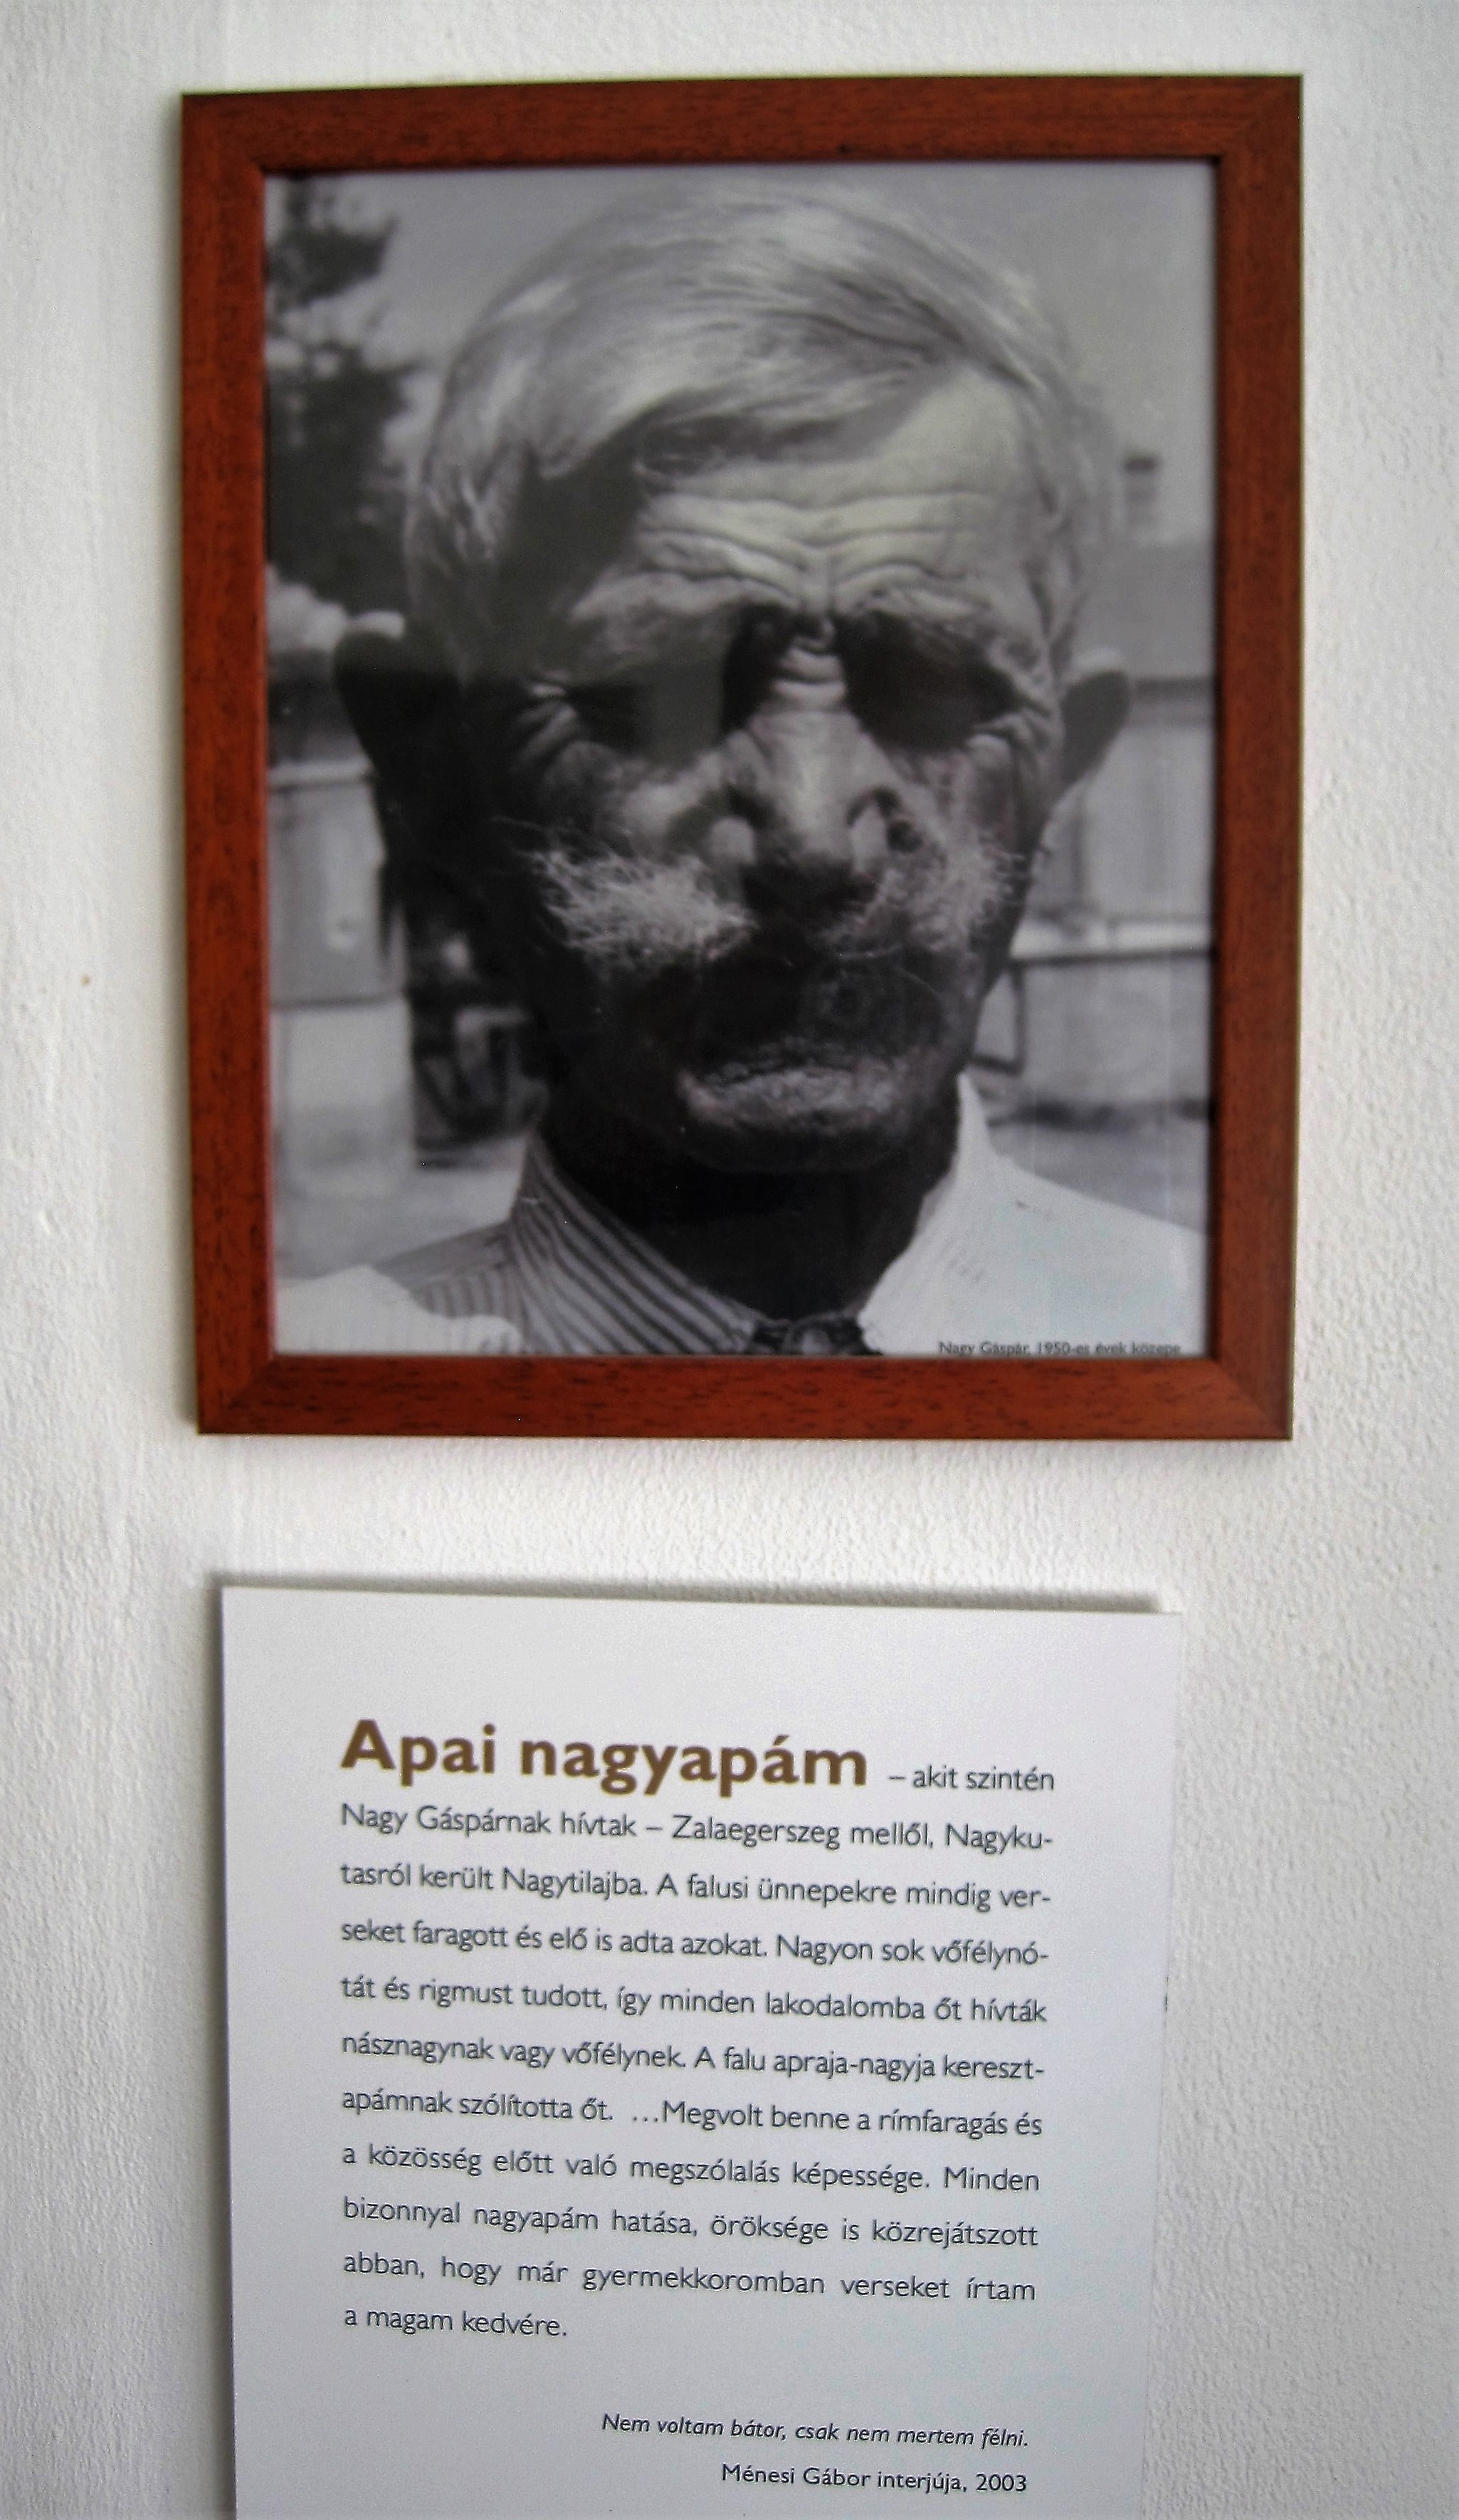 Gáspár Nagy's paternal grandfather